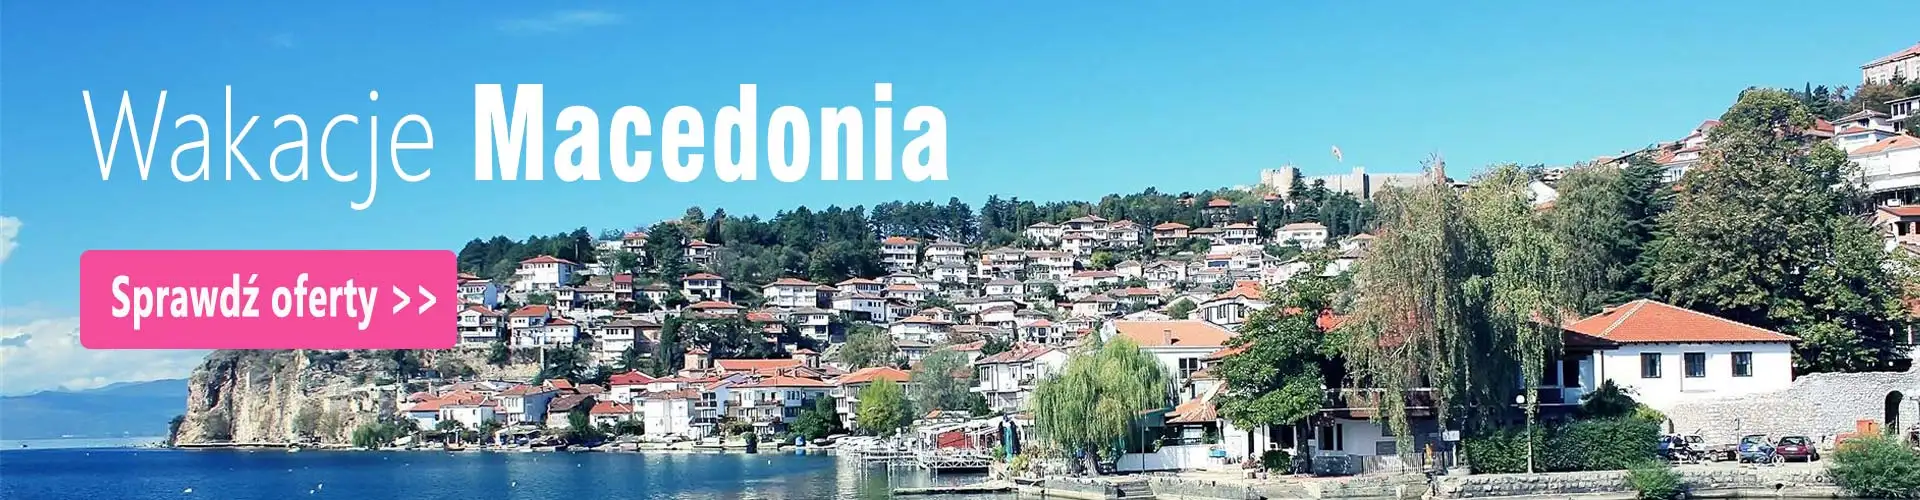 Macedonia wakacje last minute